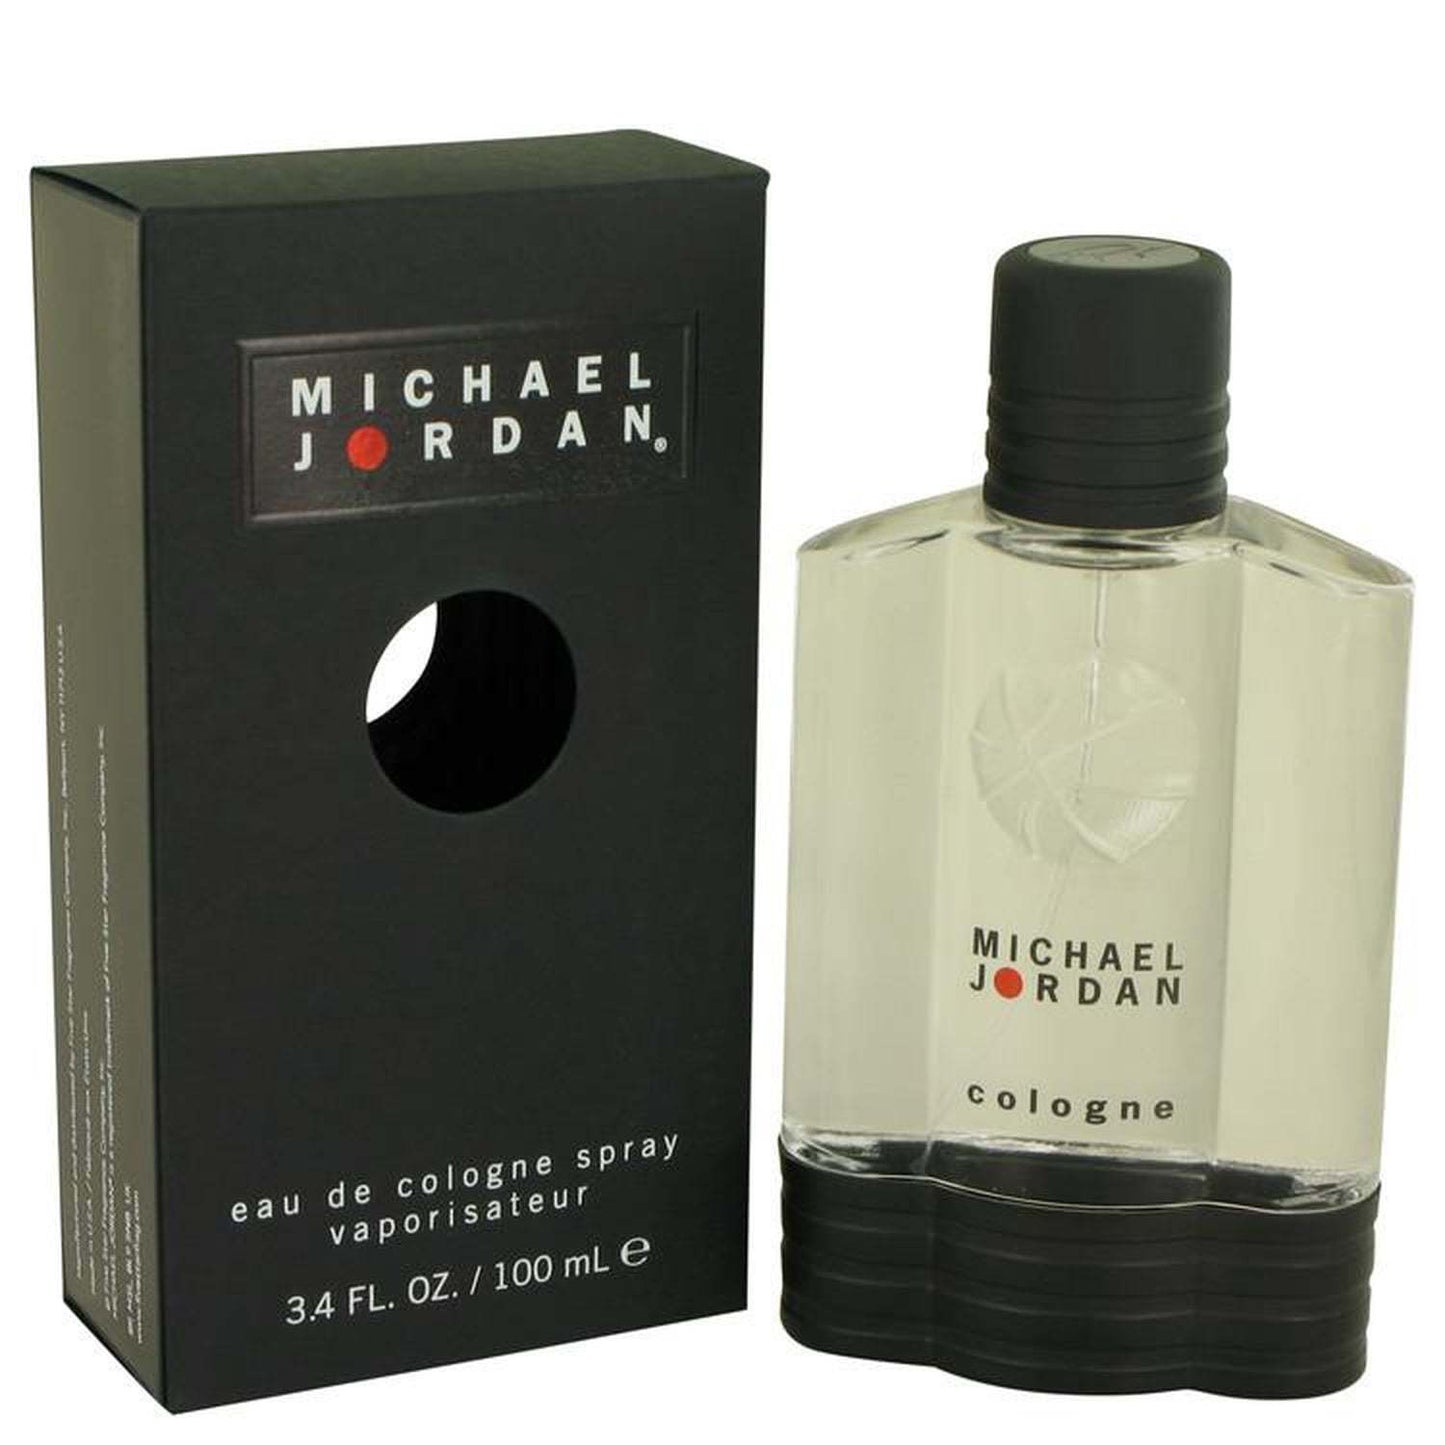 MICHAEL JORDAN by Michael Jordan Cologne Spray 3.4 oz